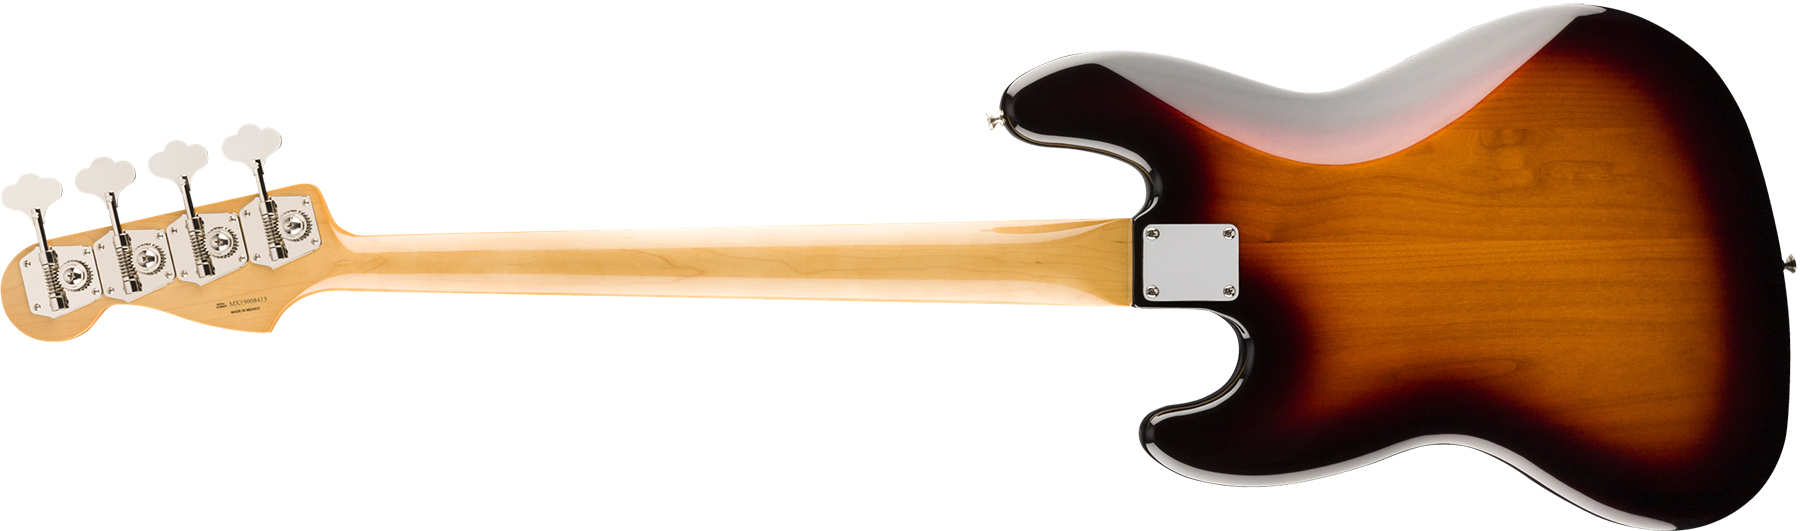 Fender Jazz Bass 60s Vintera Vintage Mex Pf - 3-color Sunburst - Bajo eléctrico de cuerpo sólido - Variation 1